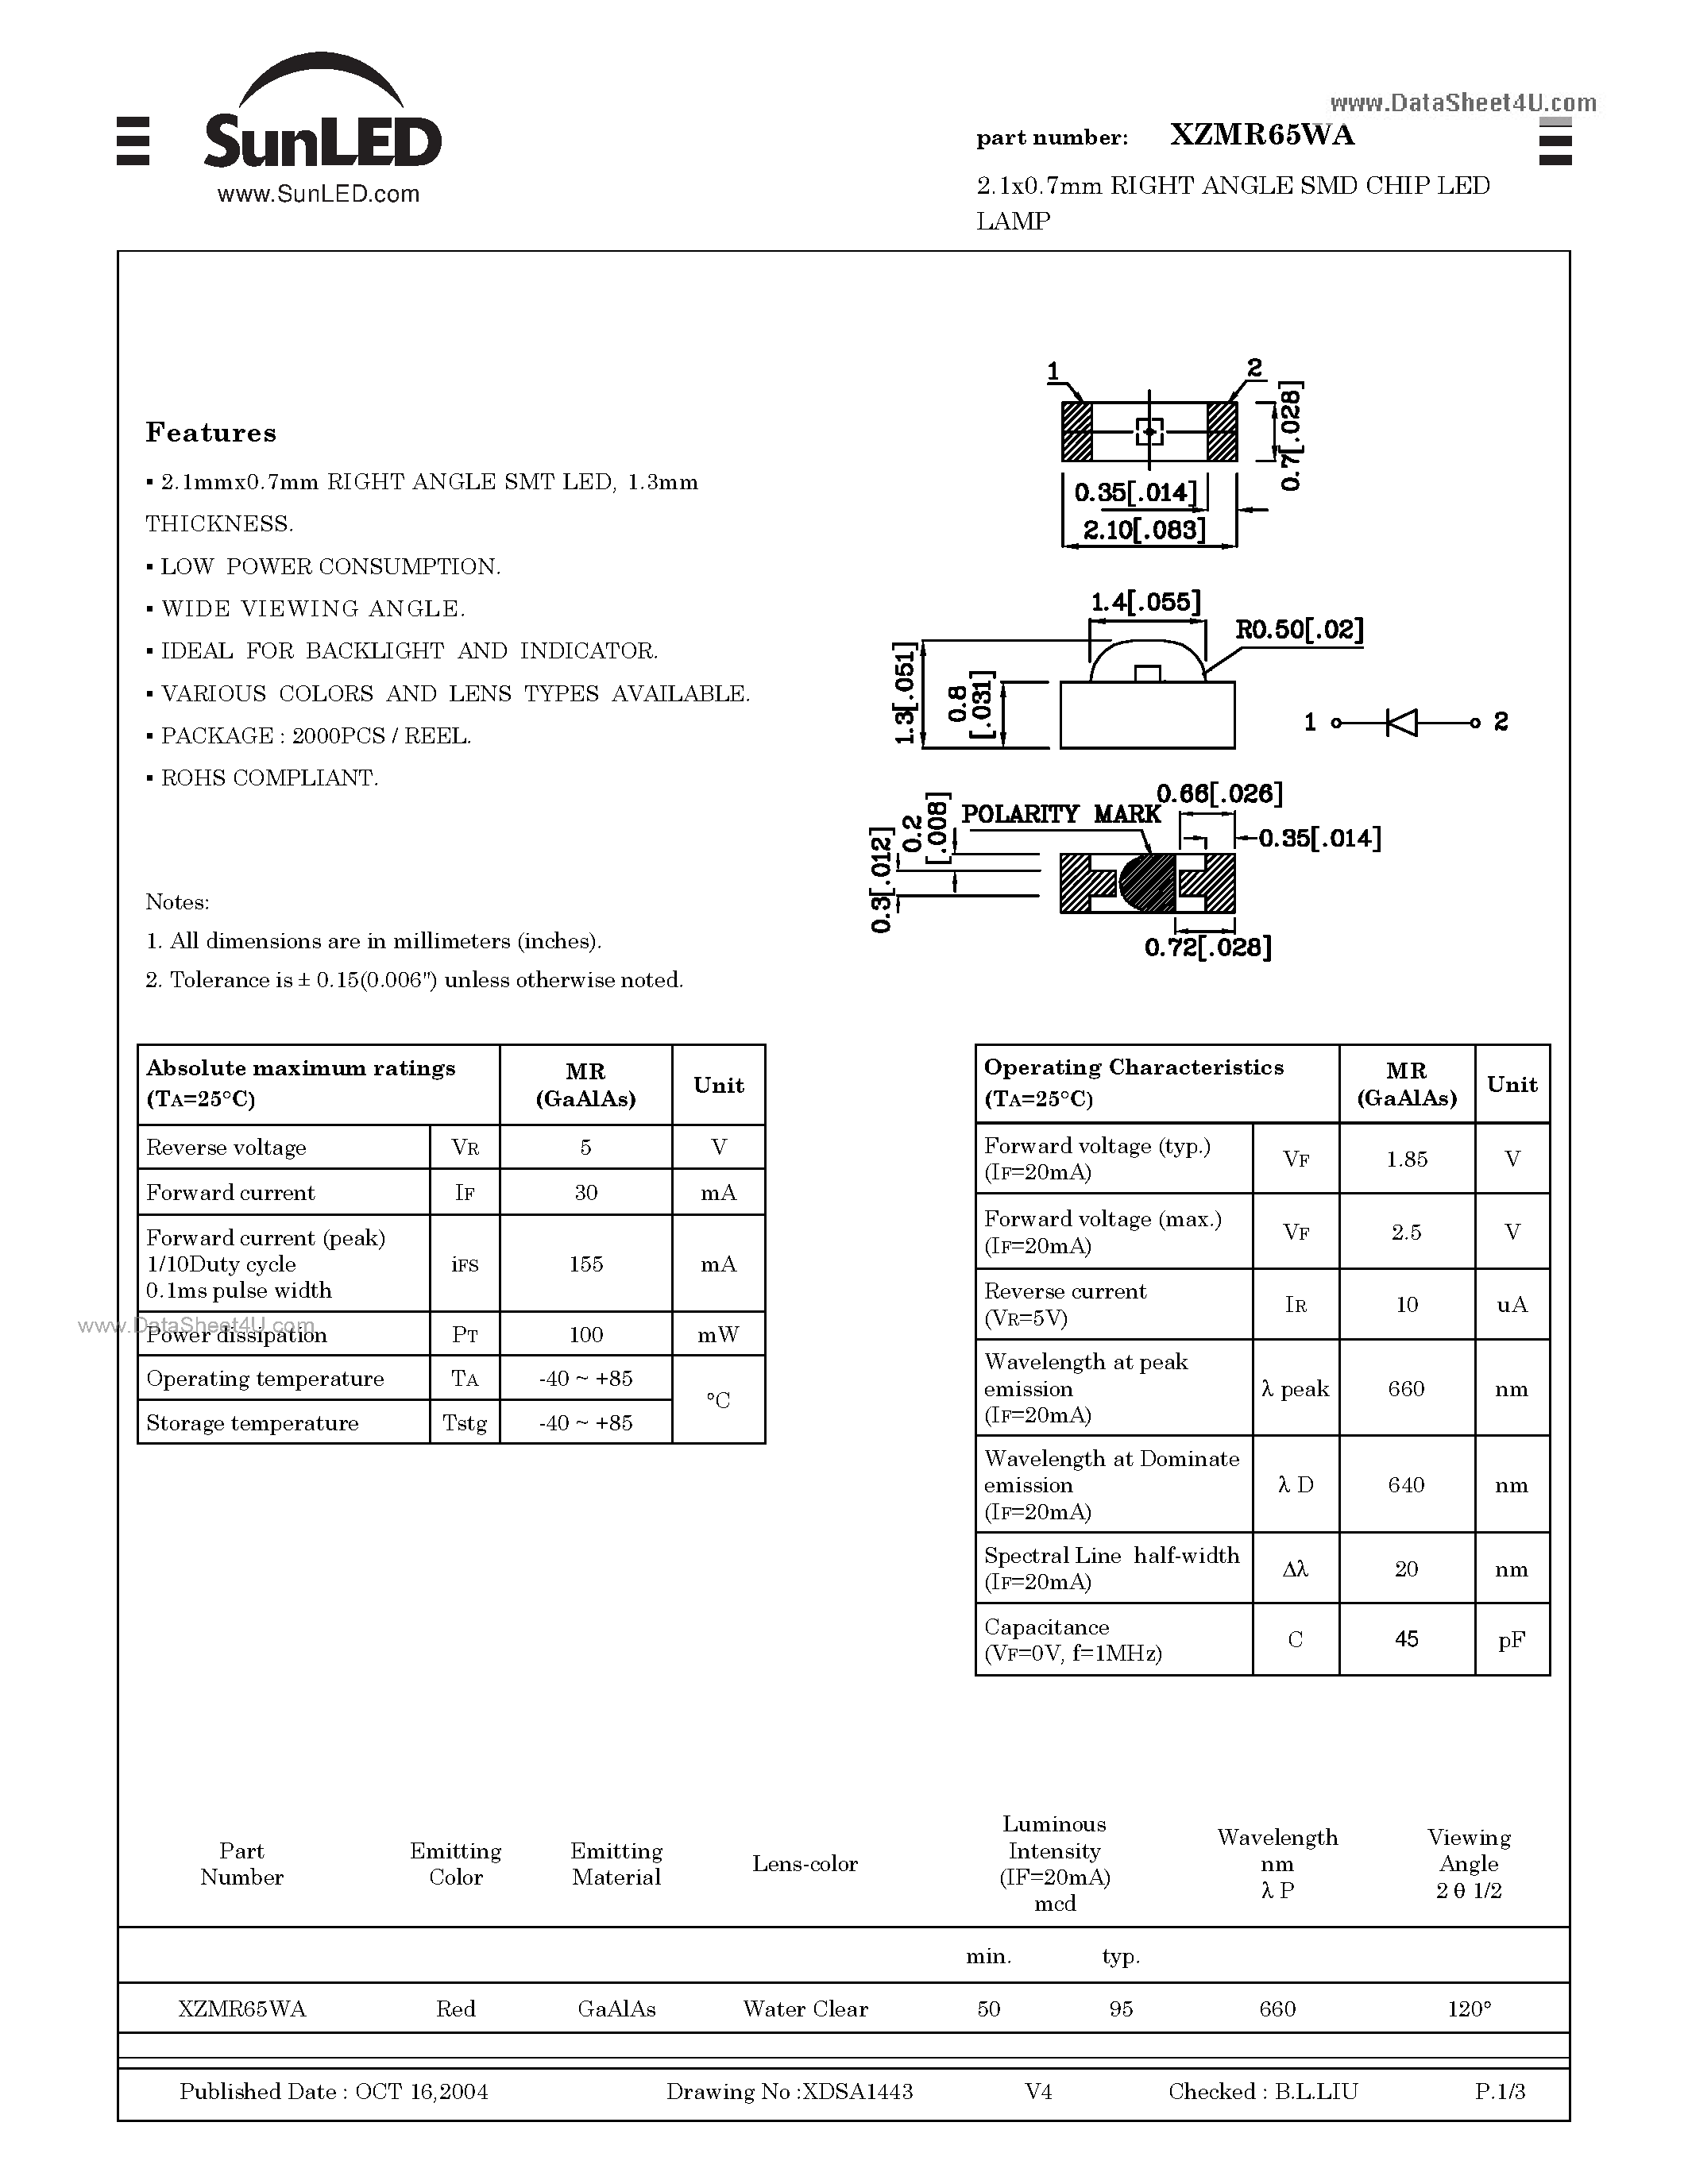 Datasheet XZMR65WA - 2.1x0.7mm RIGHT ANGLE SMD CHIP LED LAMP page 1